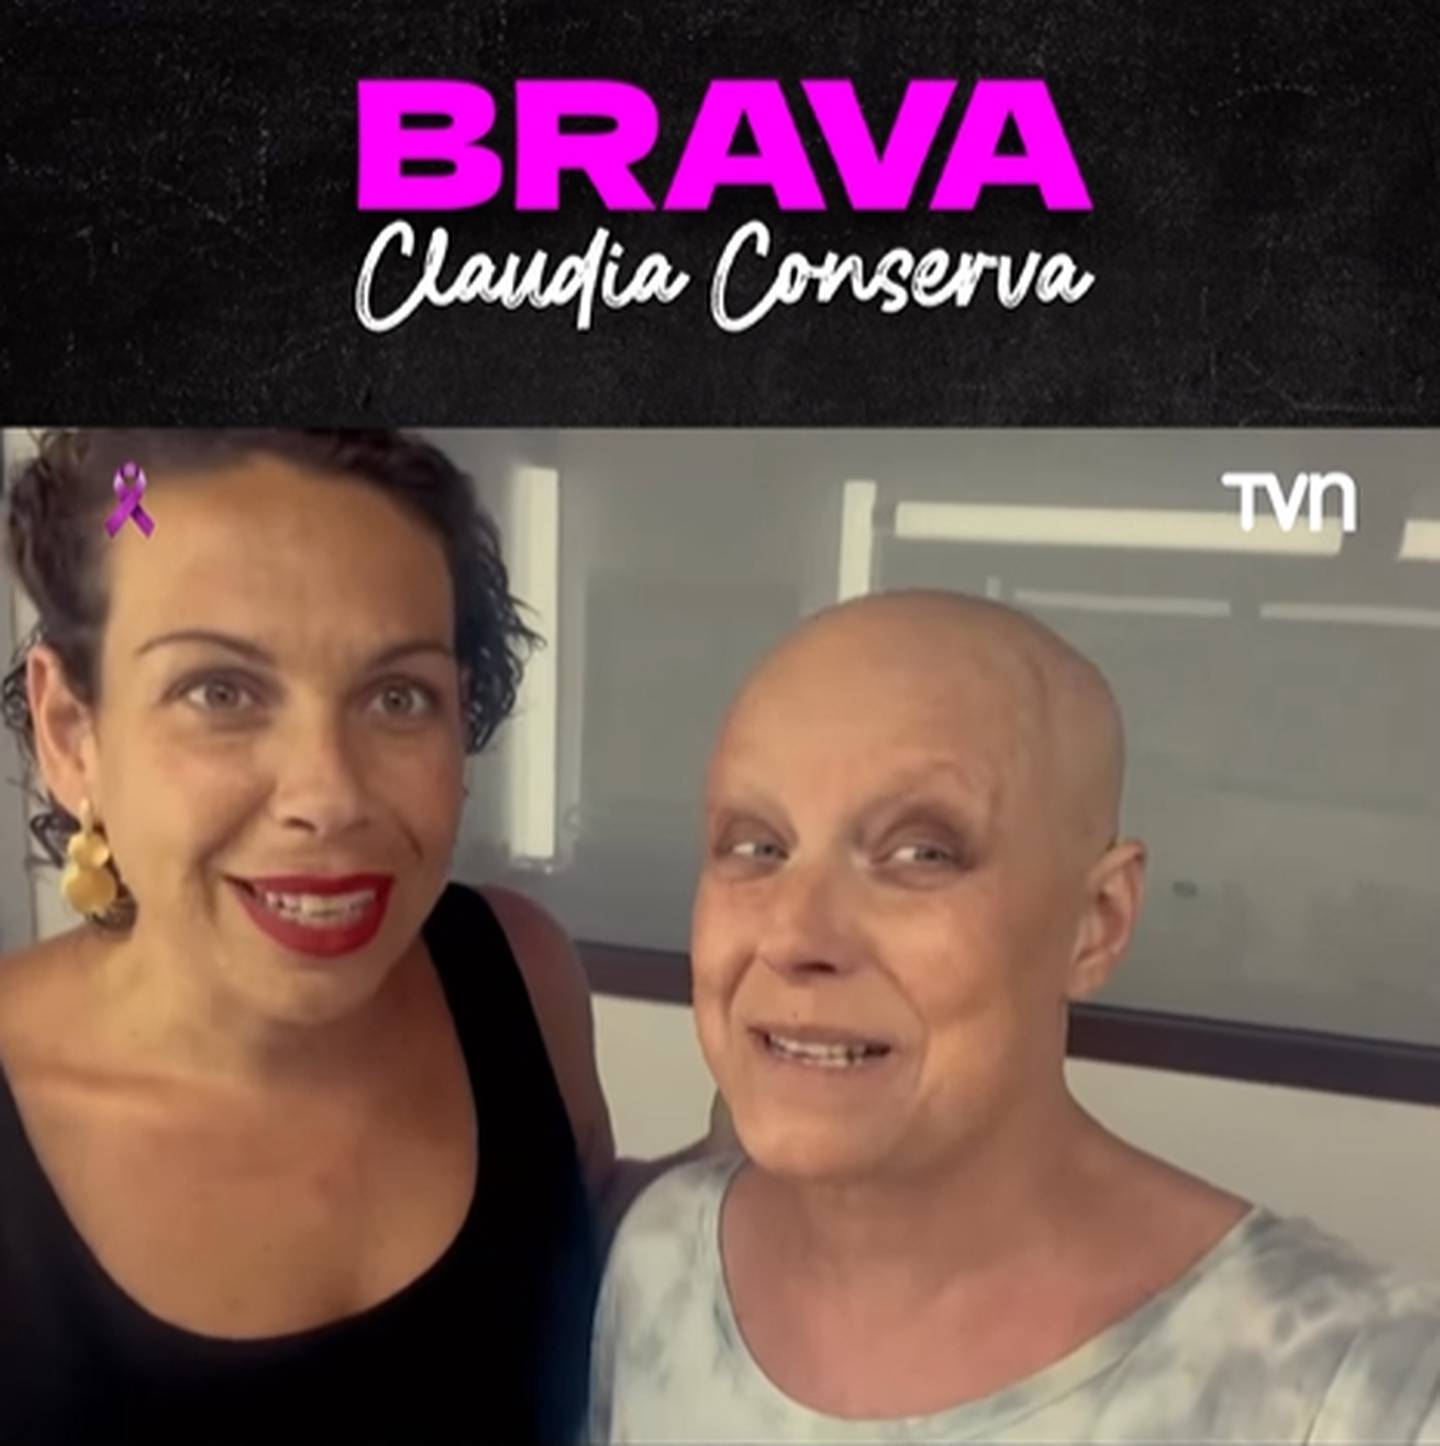 A la izquierda Fran Conserva y a la derecha Claudia Conserva, durante la grabación del documental "Brava"